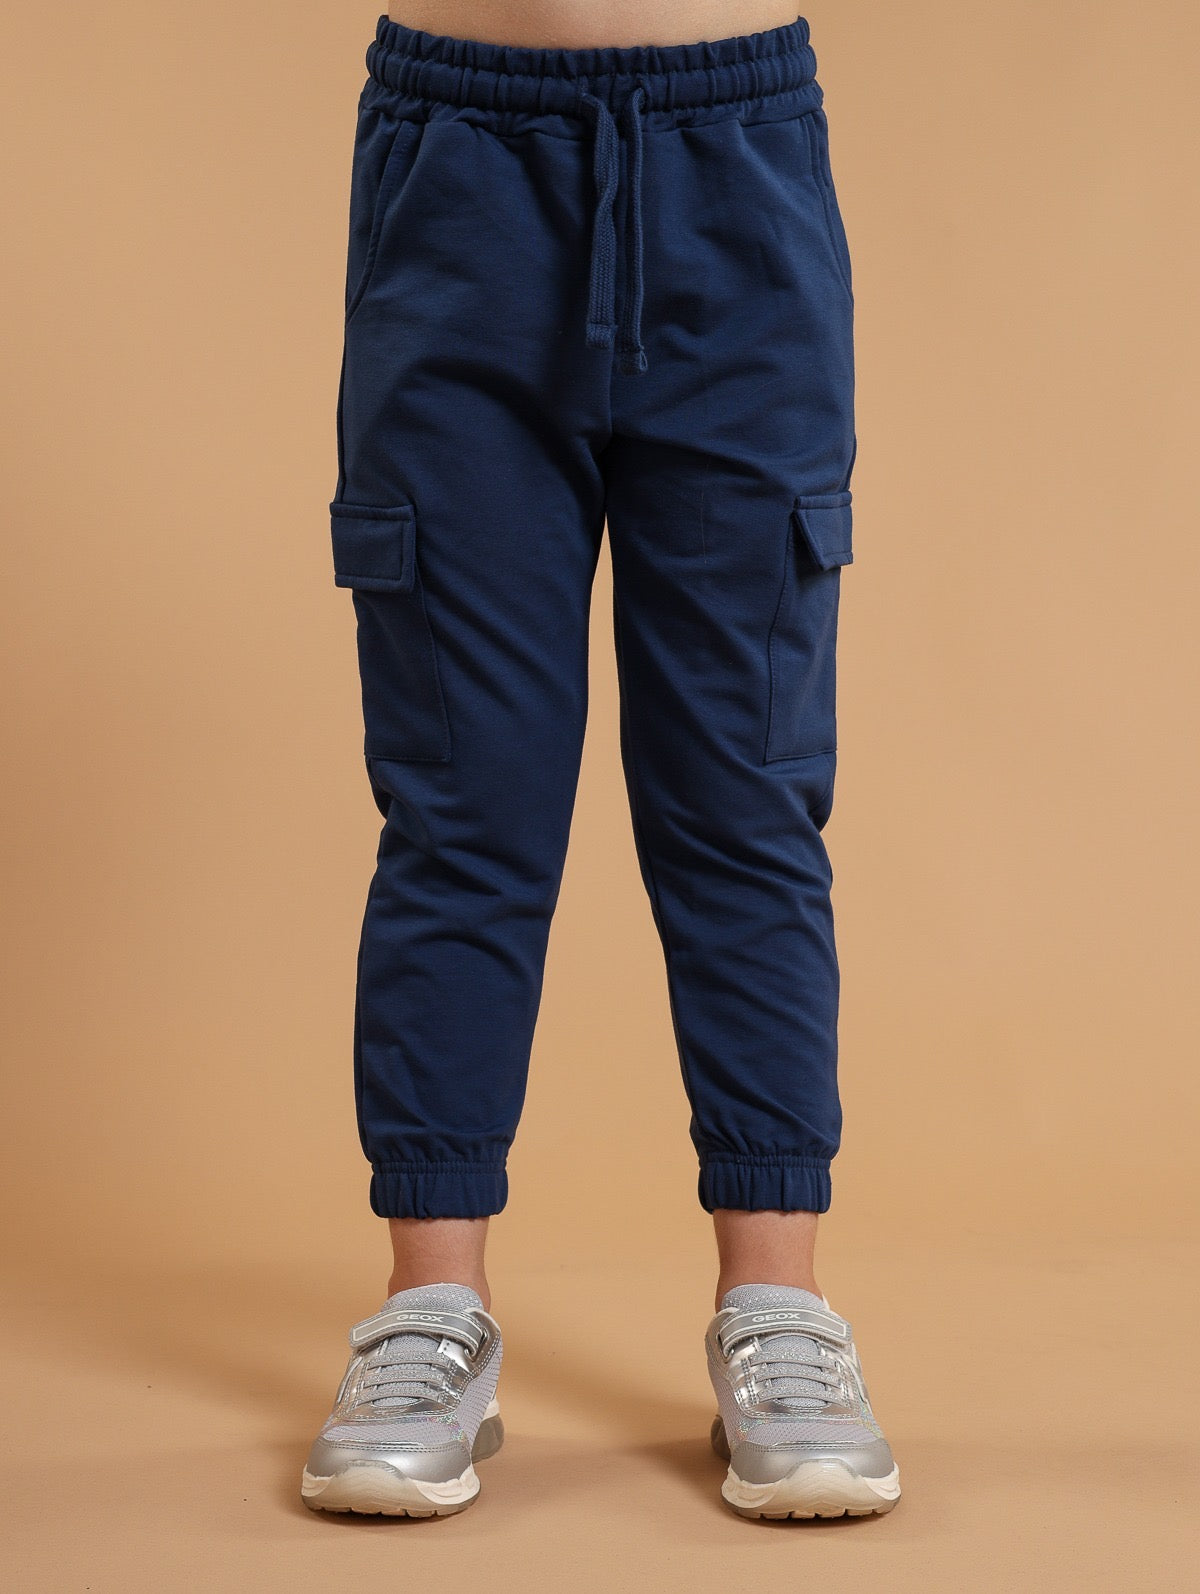 Pantalone con tasconi UNISEX in felpina leggera da 3/4 a 7/8 col blu